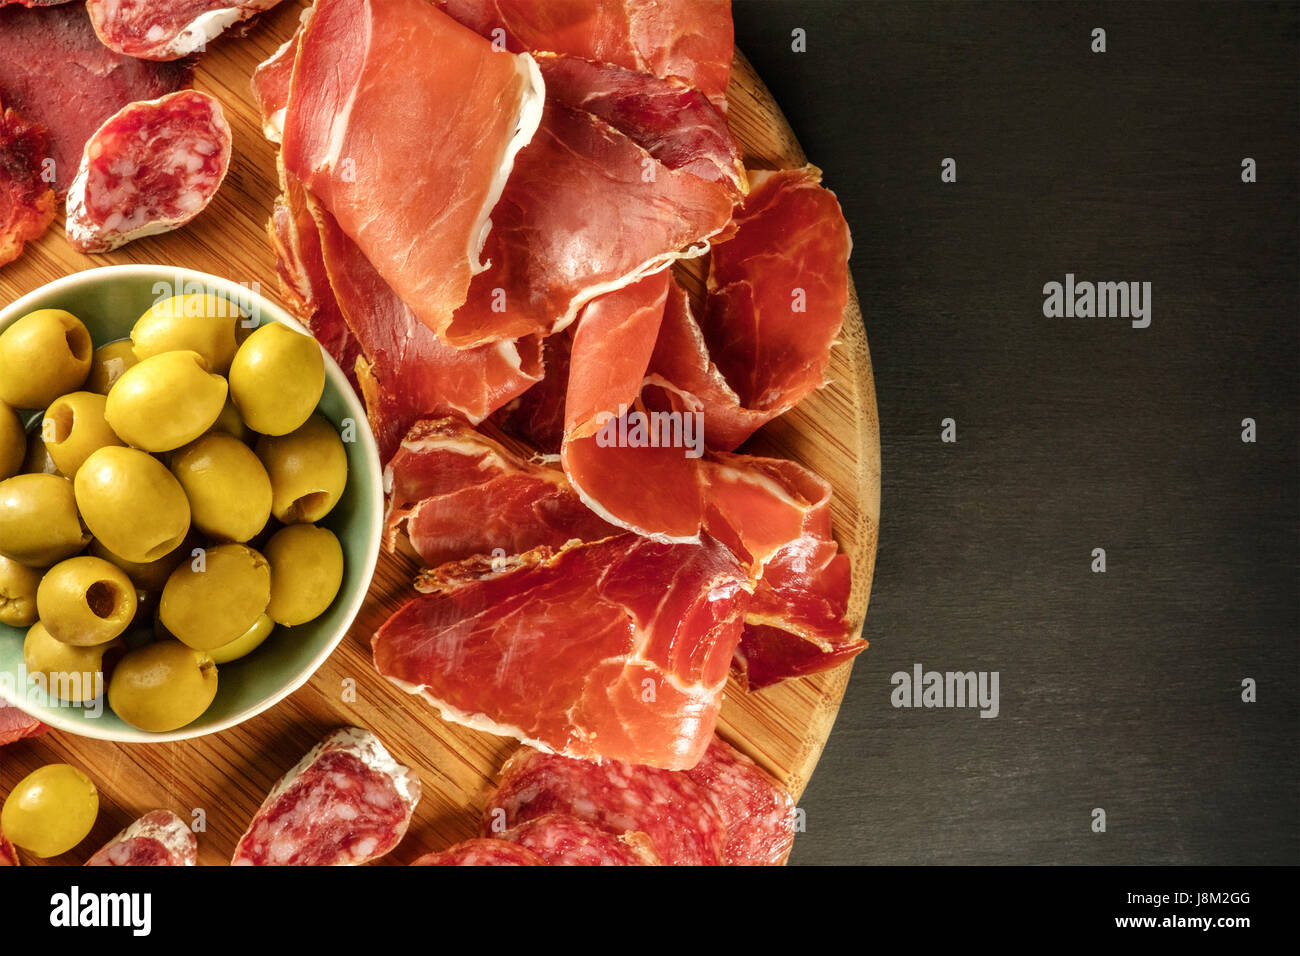 Une photo prise à la verticale d'une assiette de charcuterie espagnole avec  jambon et saucisse cafe, aux olives vertes, sur un fond sombre avec une  place pour le texte Photo Stock -